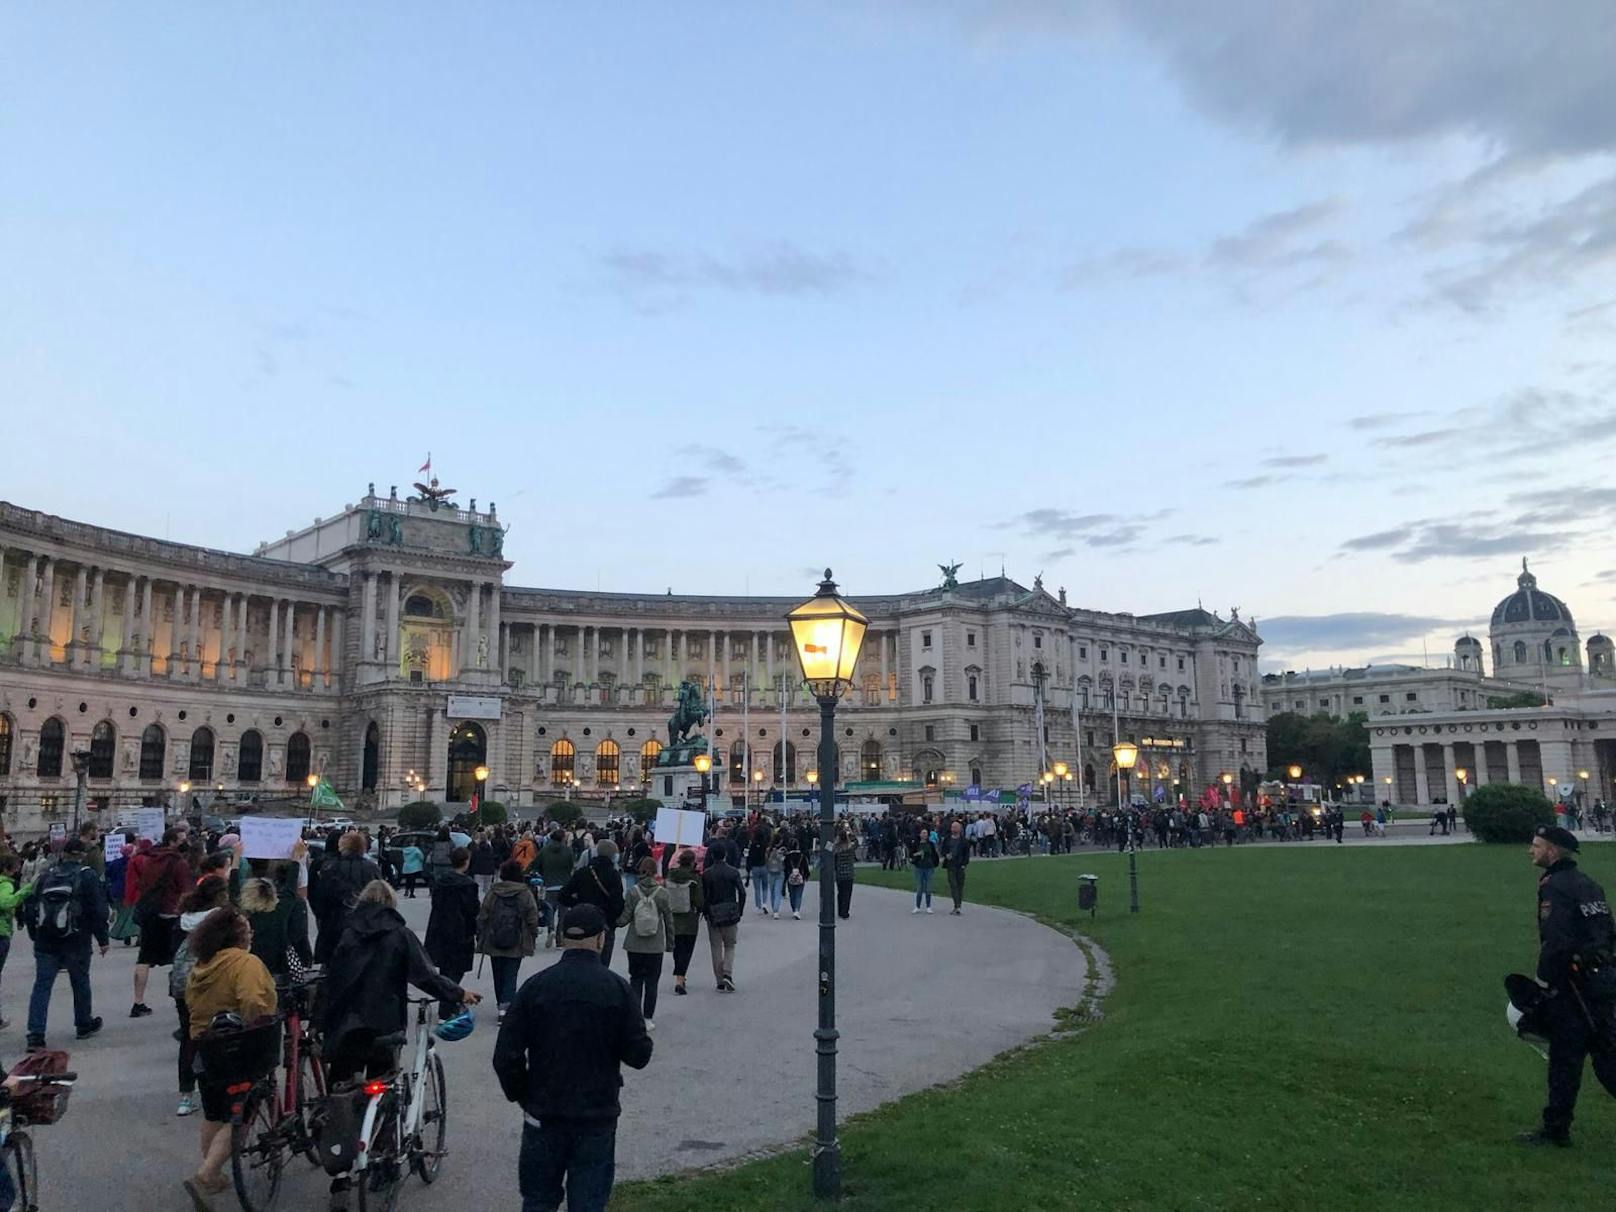 Tausende Menschen demonstrierten am Dienstag in Wien gegen den ÖVP-Kurs in Sachen Afghanistan.